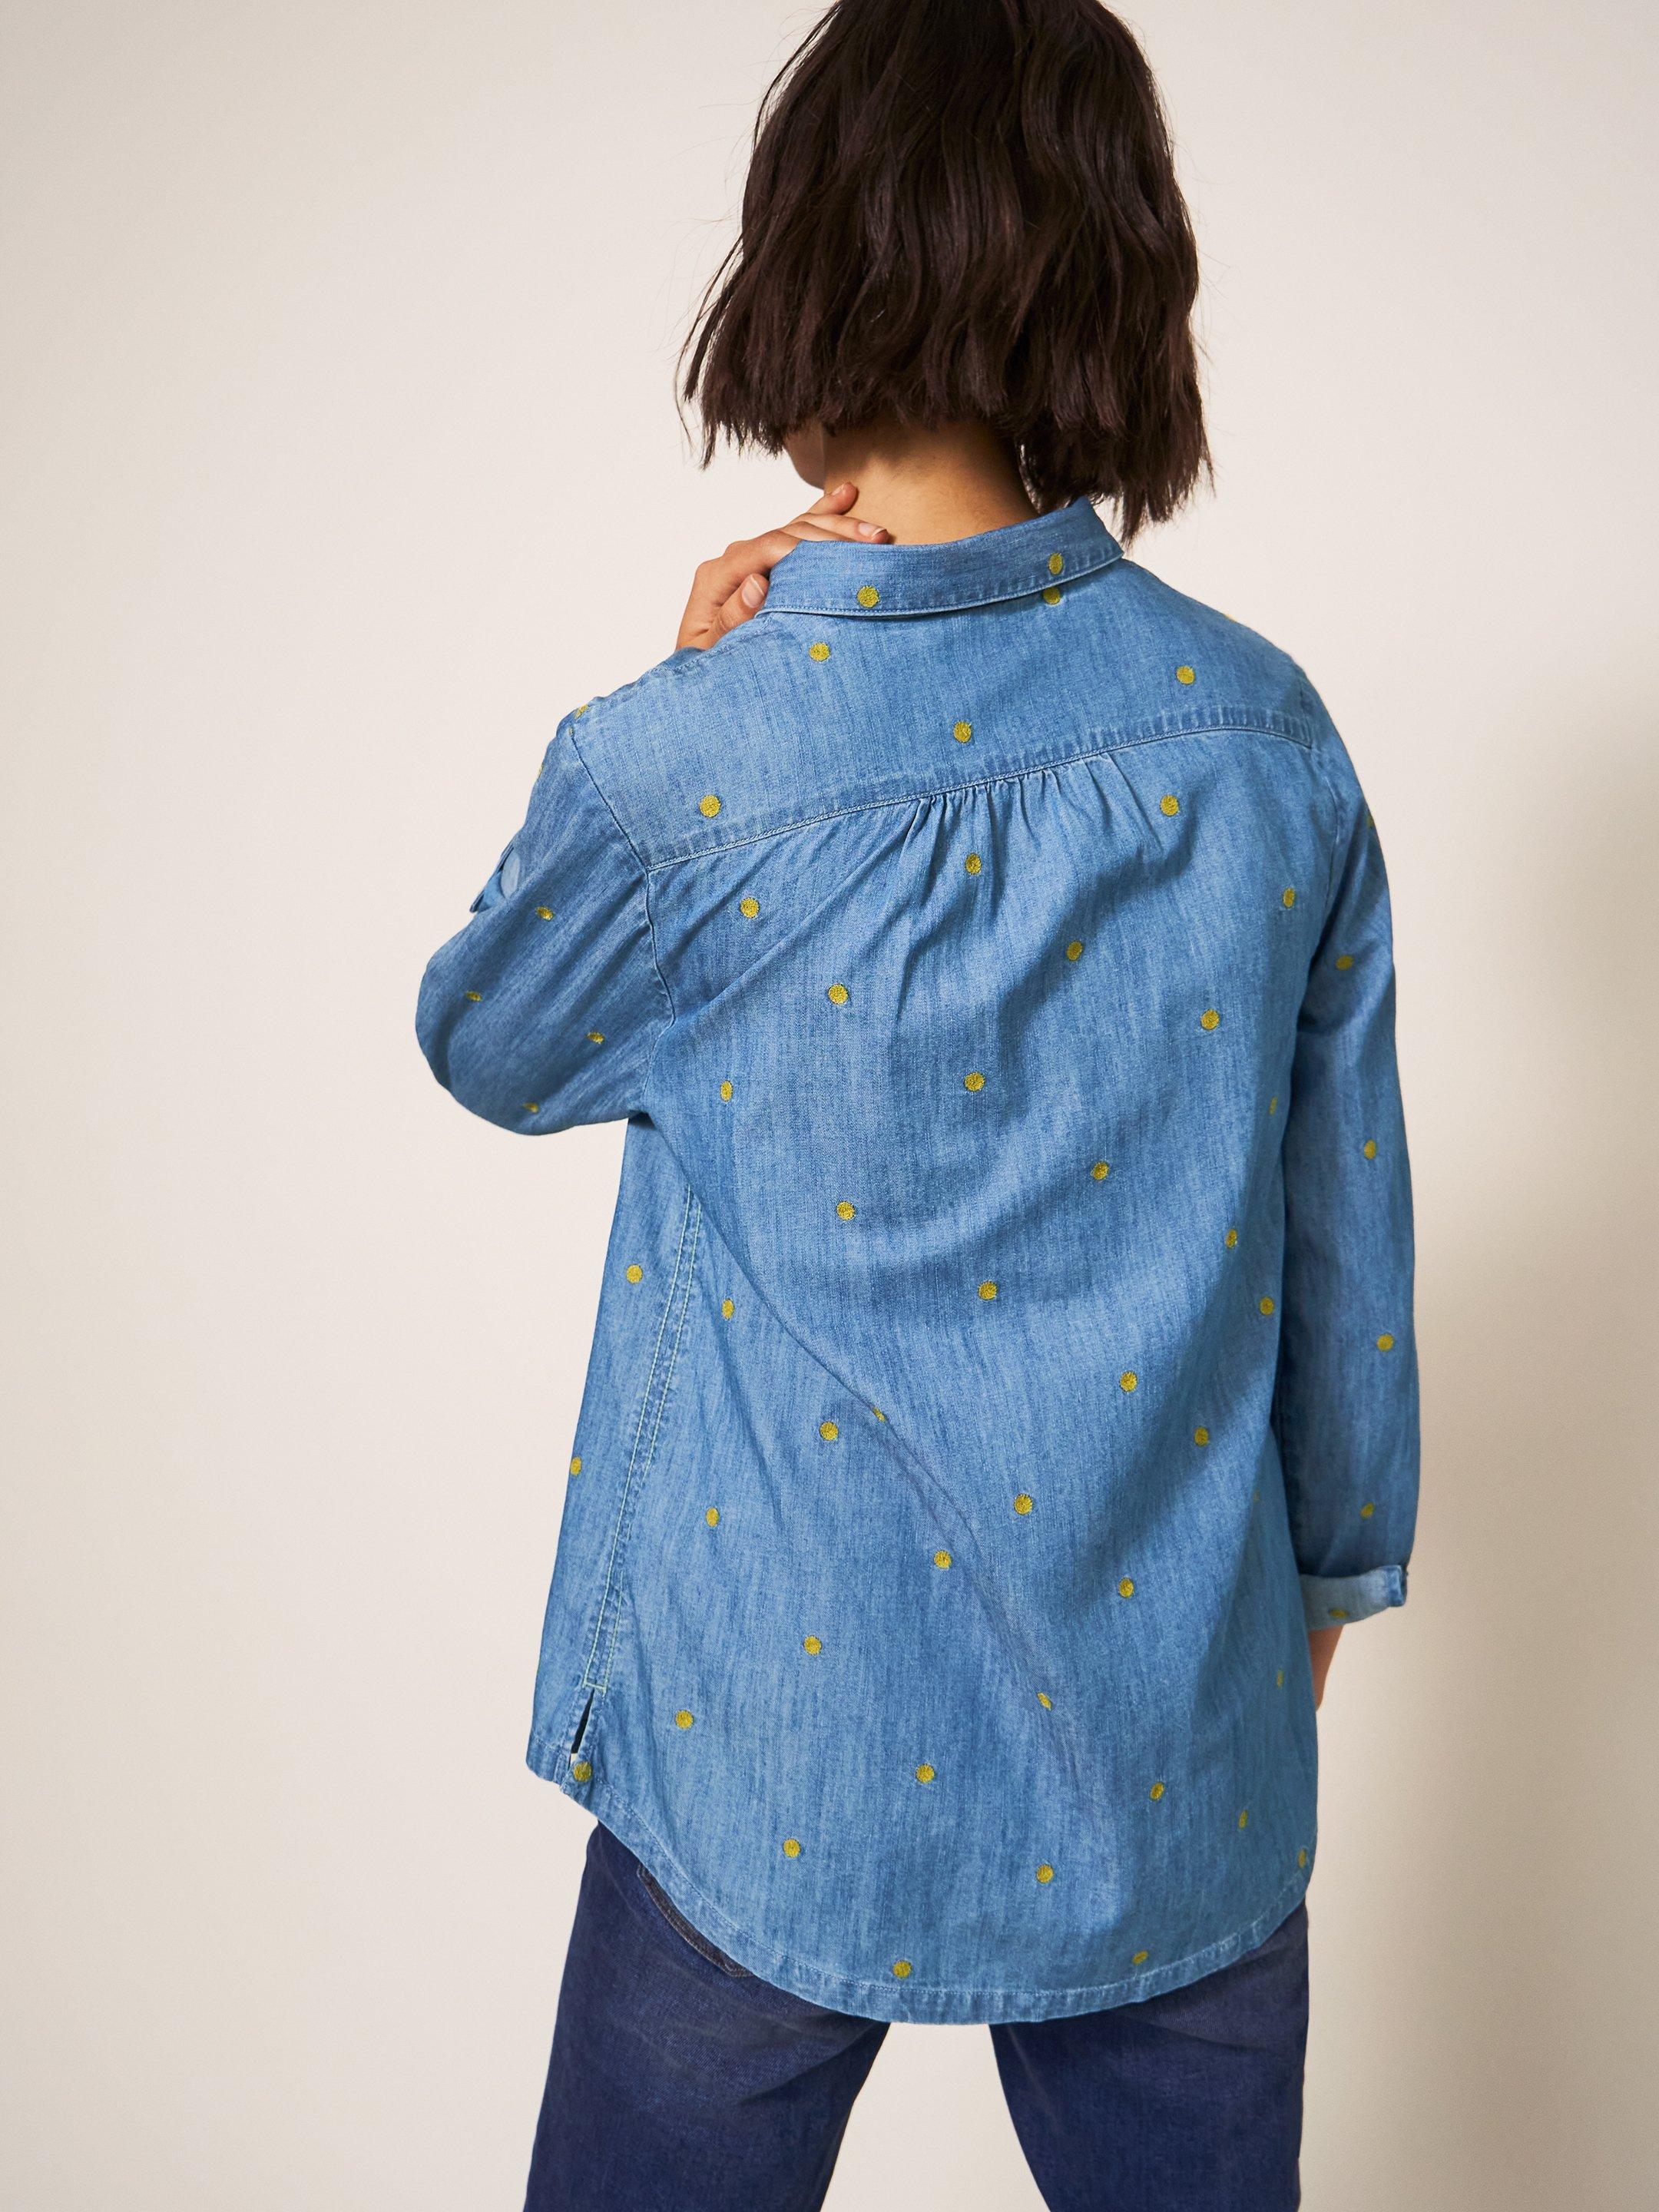 Sophie Embroidered Shirt in DENIM MLT - MODEL BACK